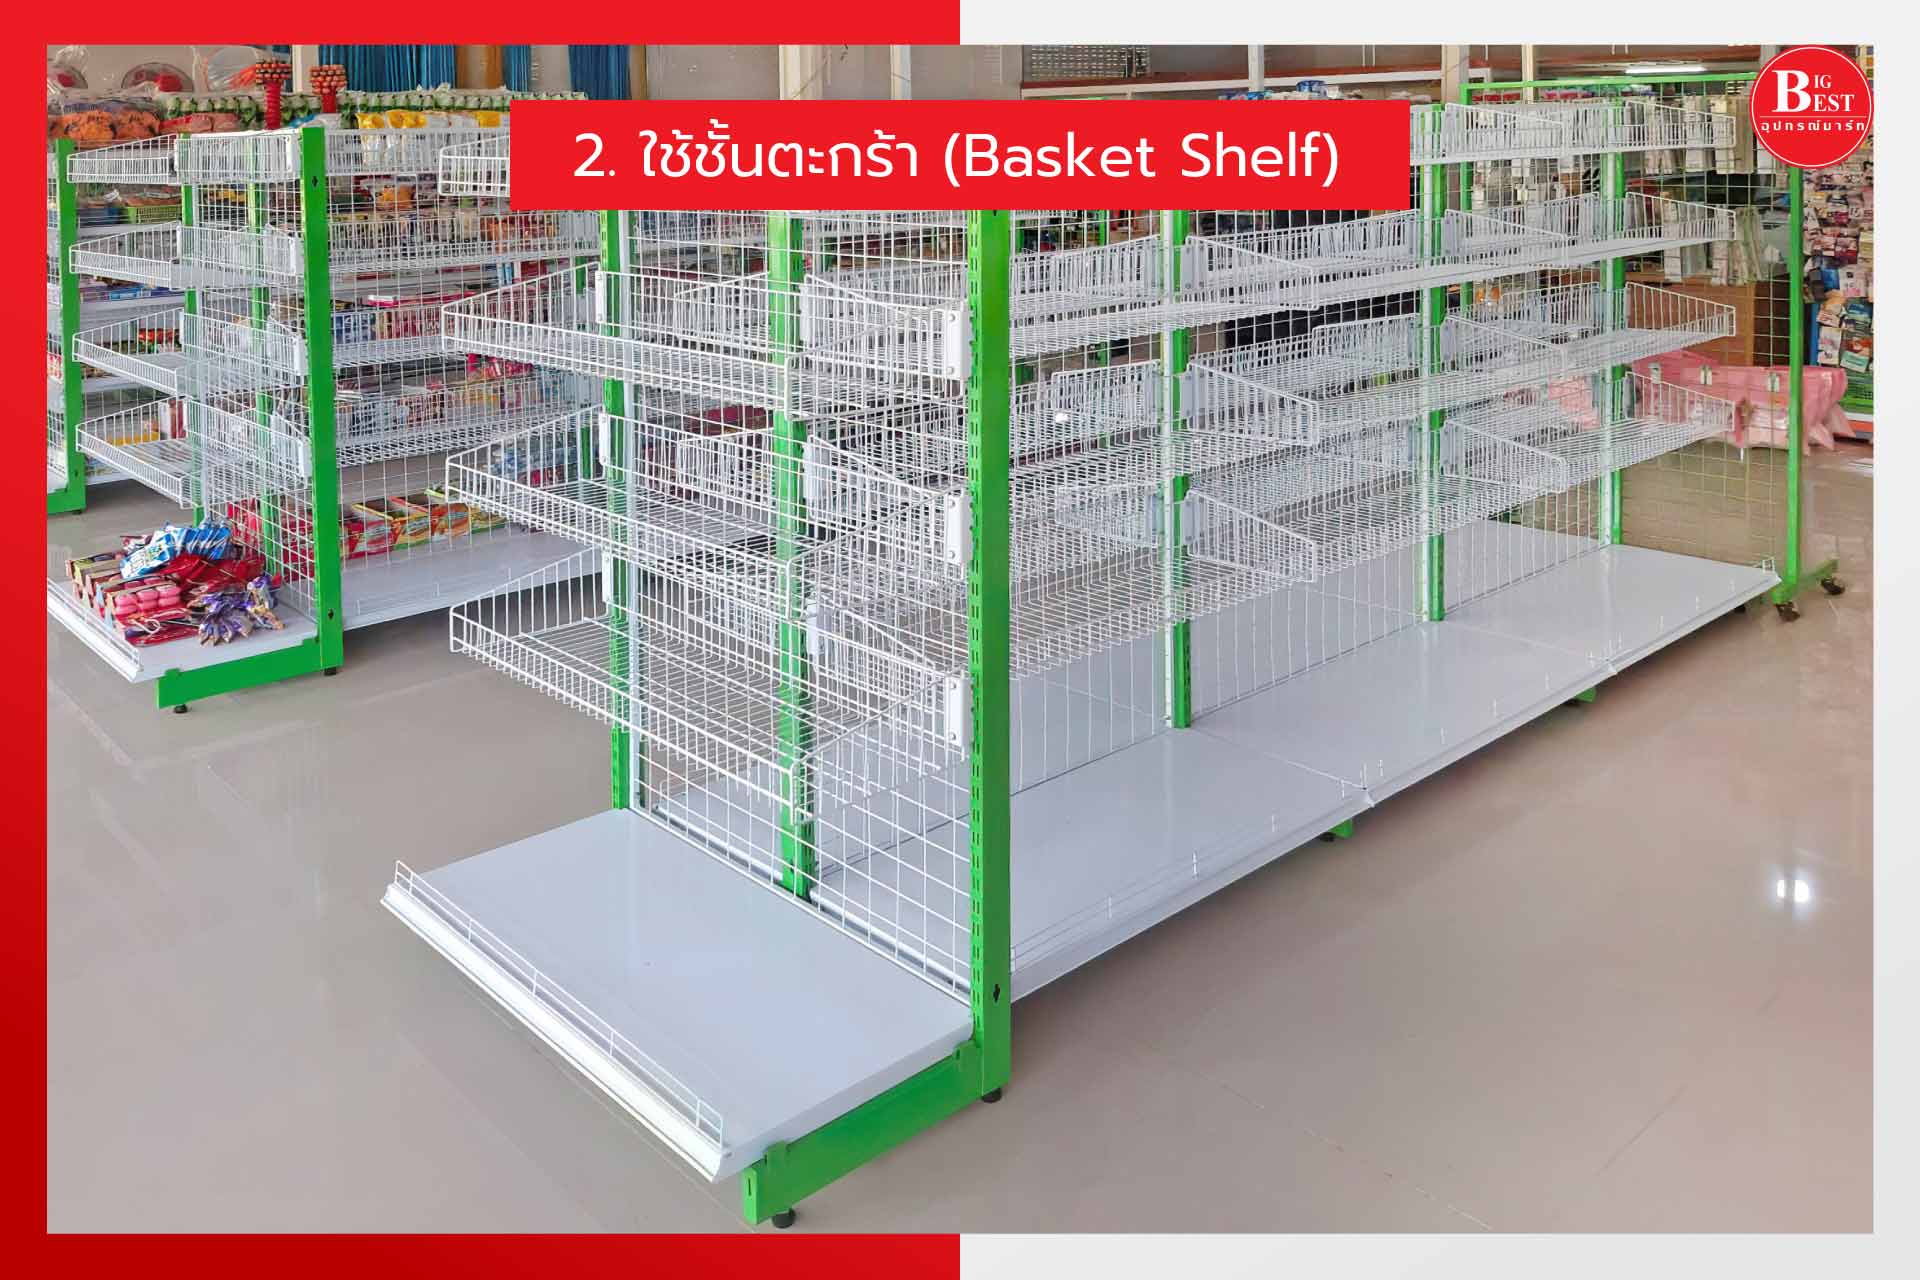 2. ใช้ชั้นตะกร้า (basket shelf)